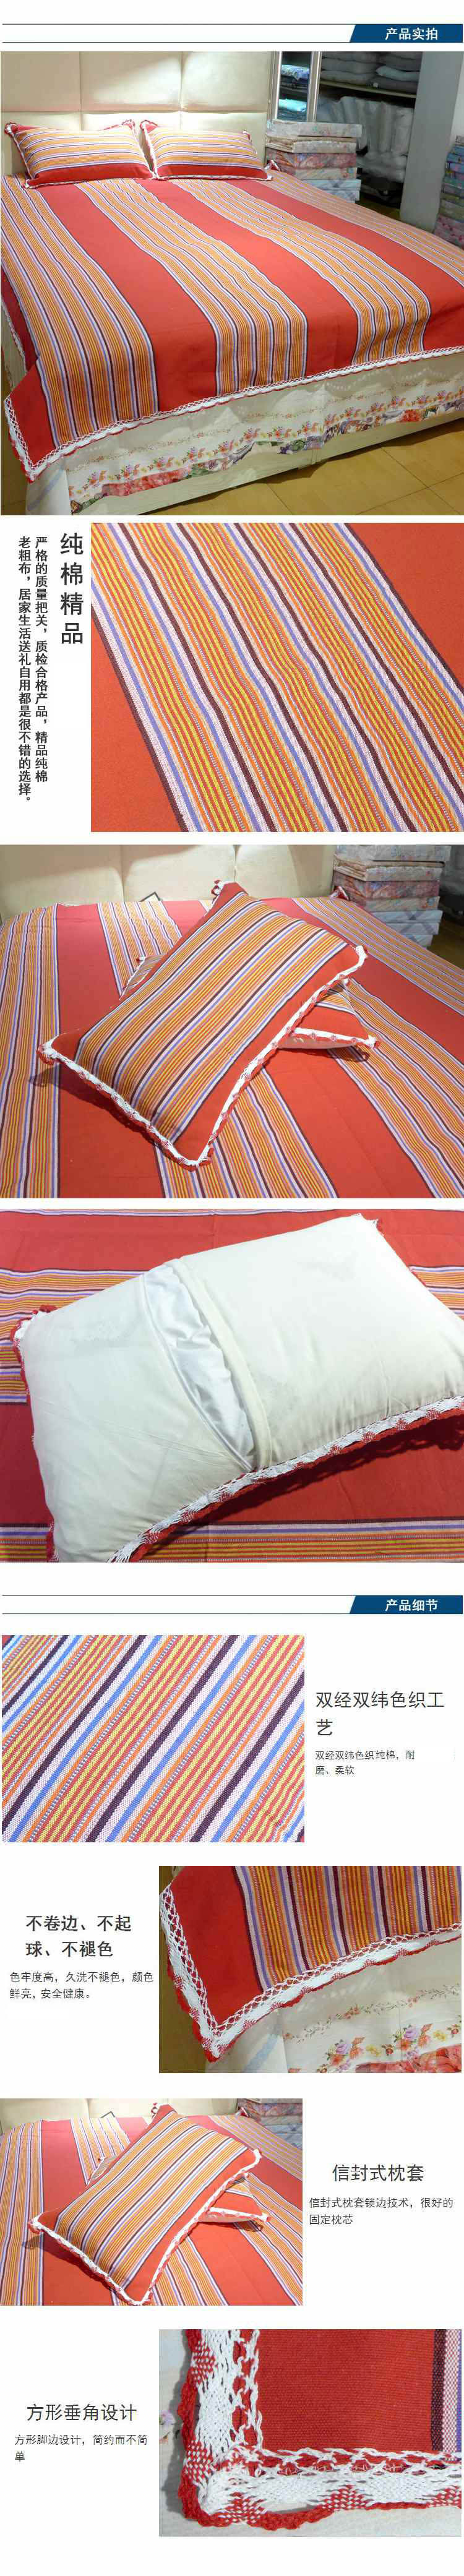 锦绣 优质花边粗布凉席床单三件套 纯棉加厚可做凉席 2.0*2.3米  32股粗纱精纺 吸汗透气